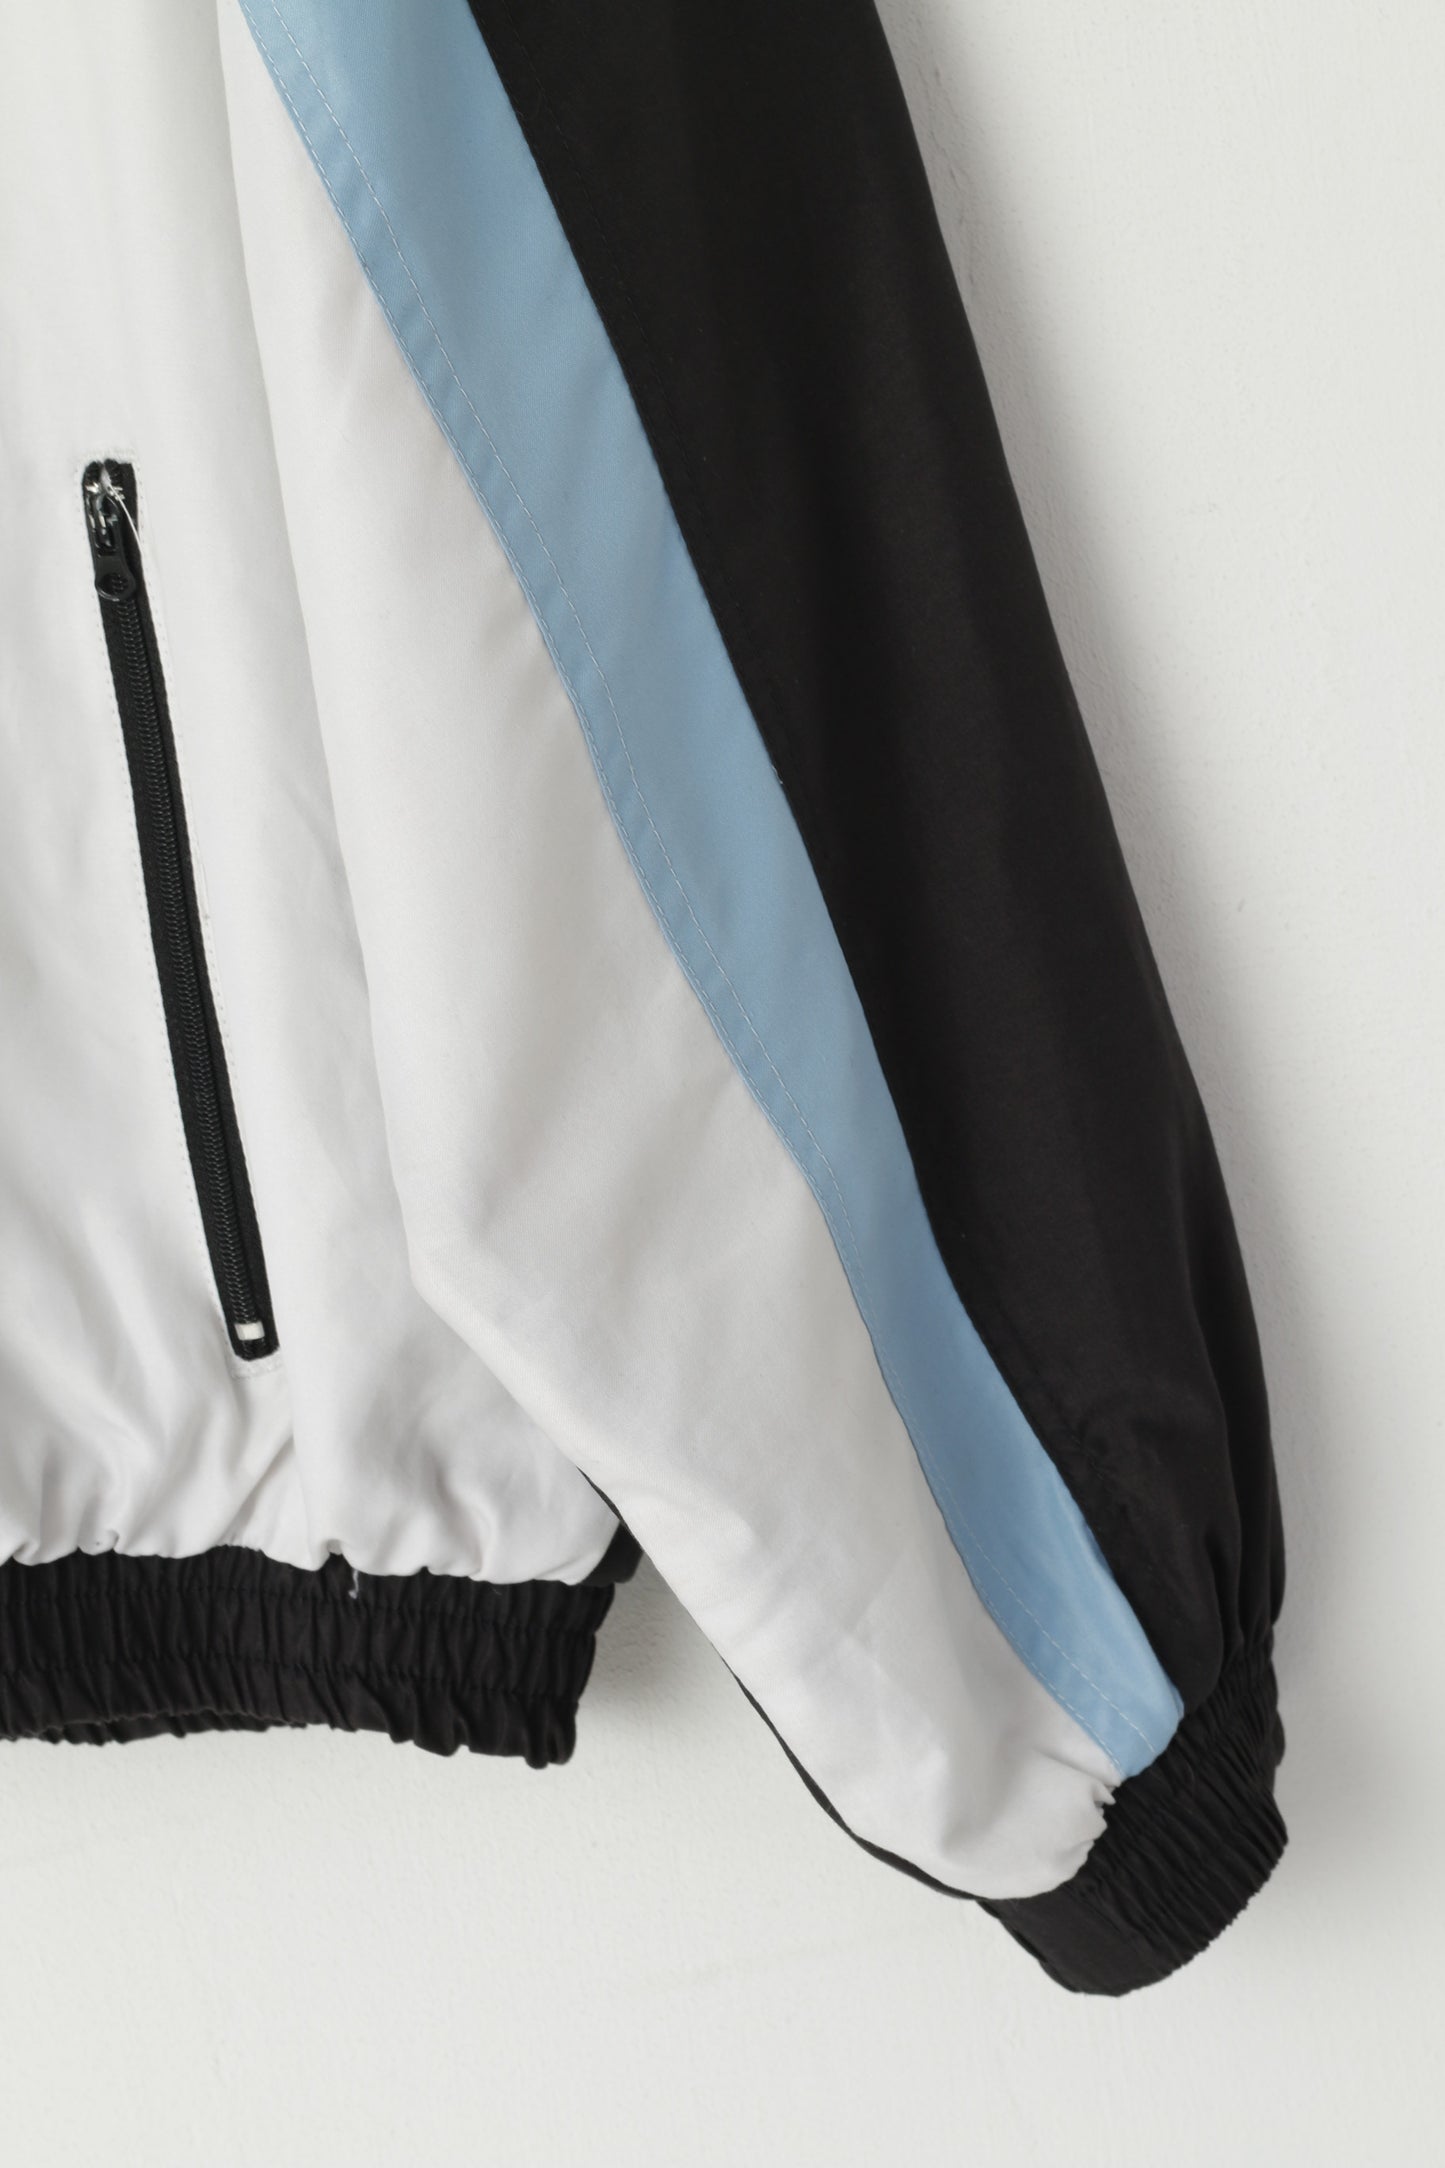 Giacca Pirelli da uomo M Nero Bianco Leggero con cerniera intera Foderato in rete per abbigliamento sportivo